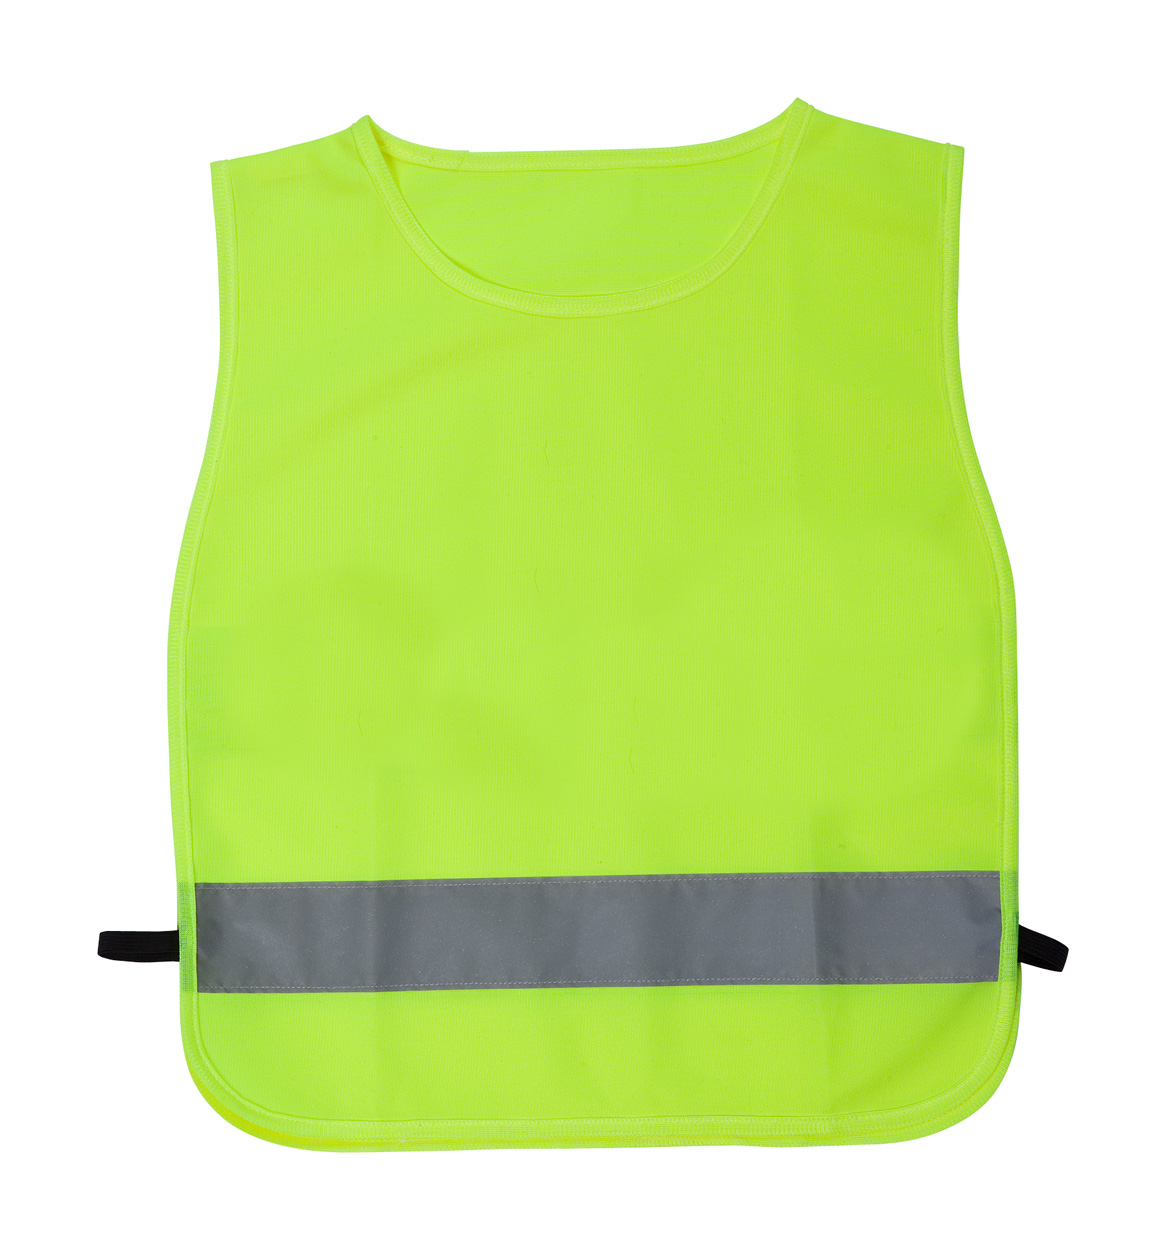 Safety vest for children ELI